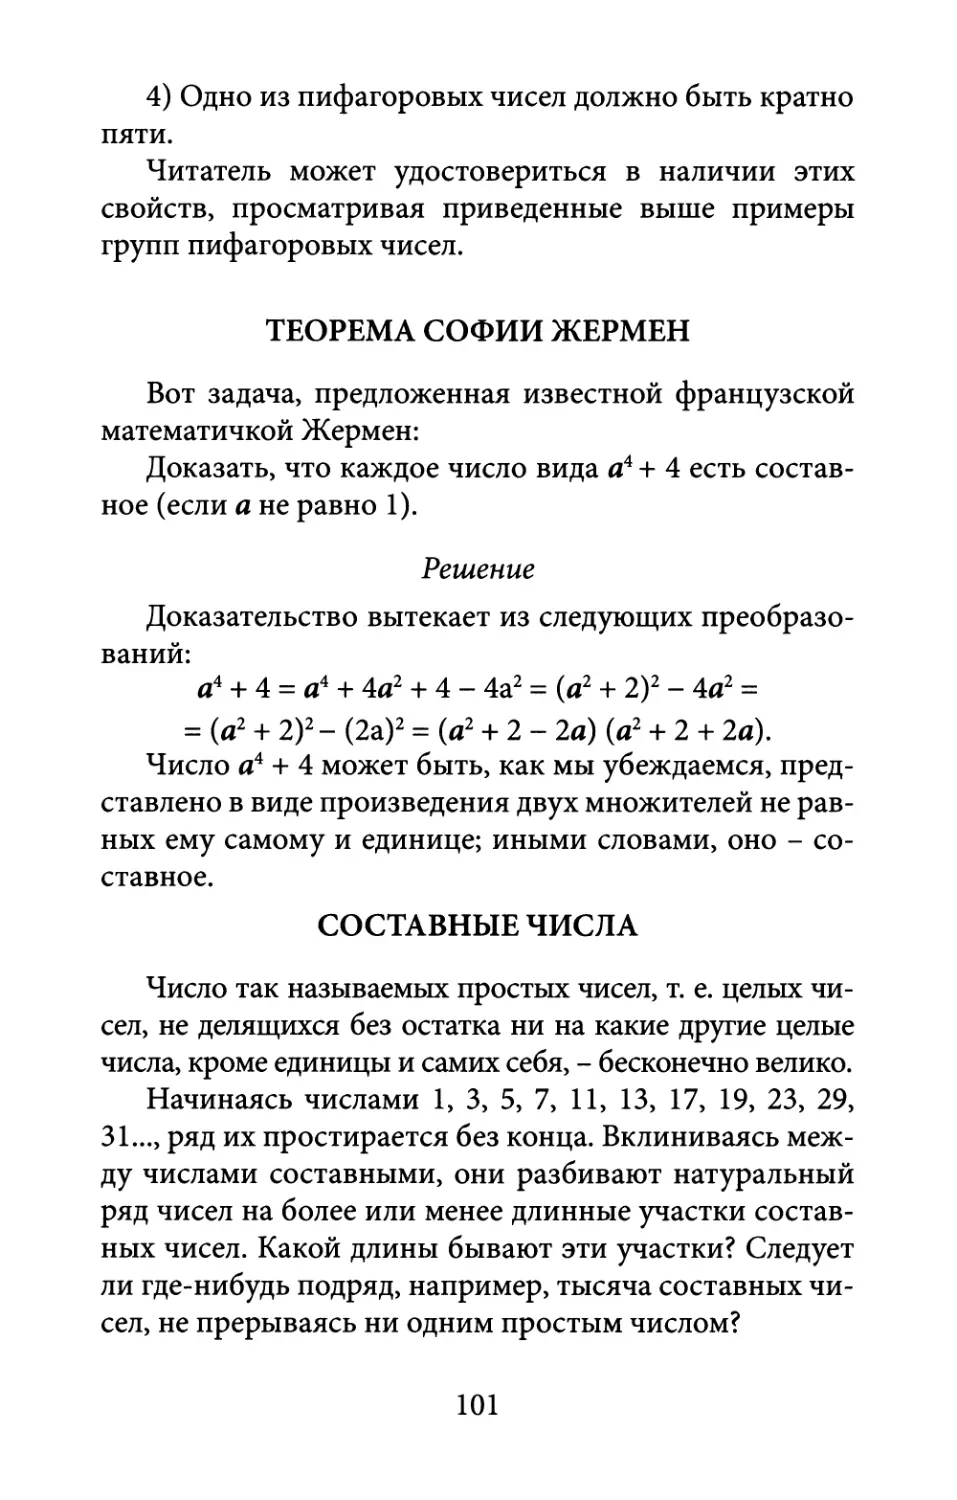 Теорема  Софии  Жермен
Составные  числа